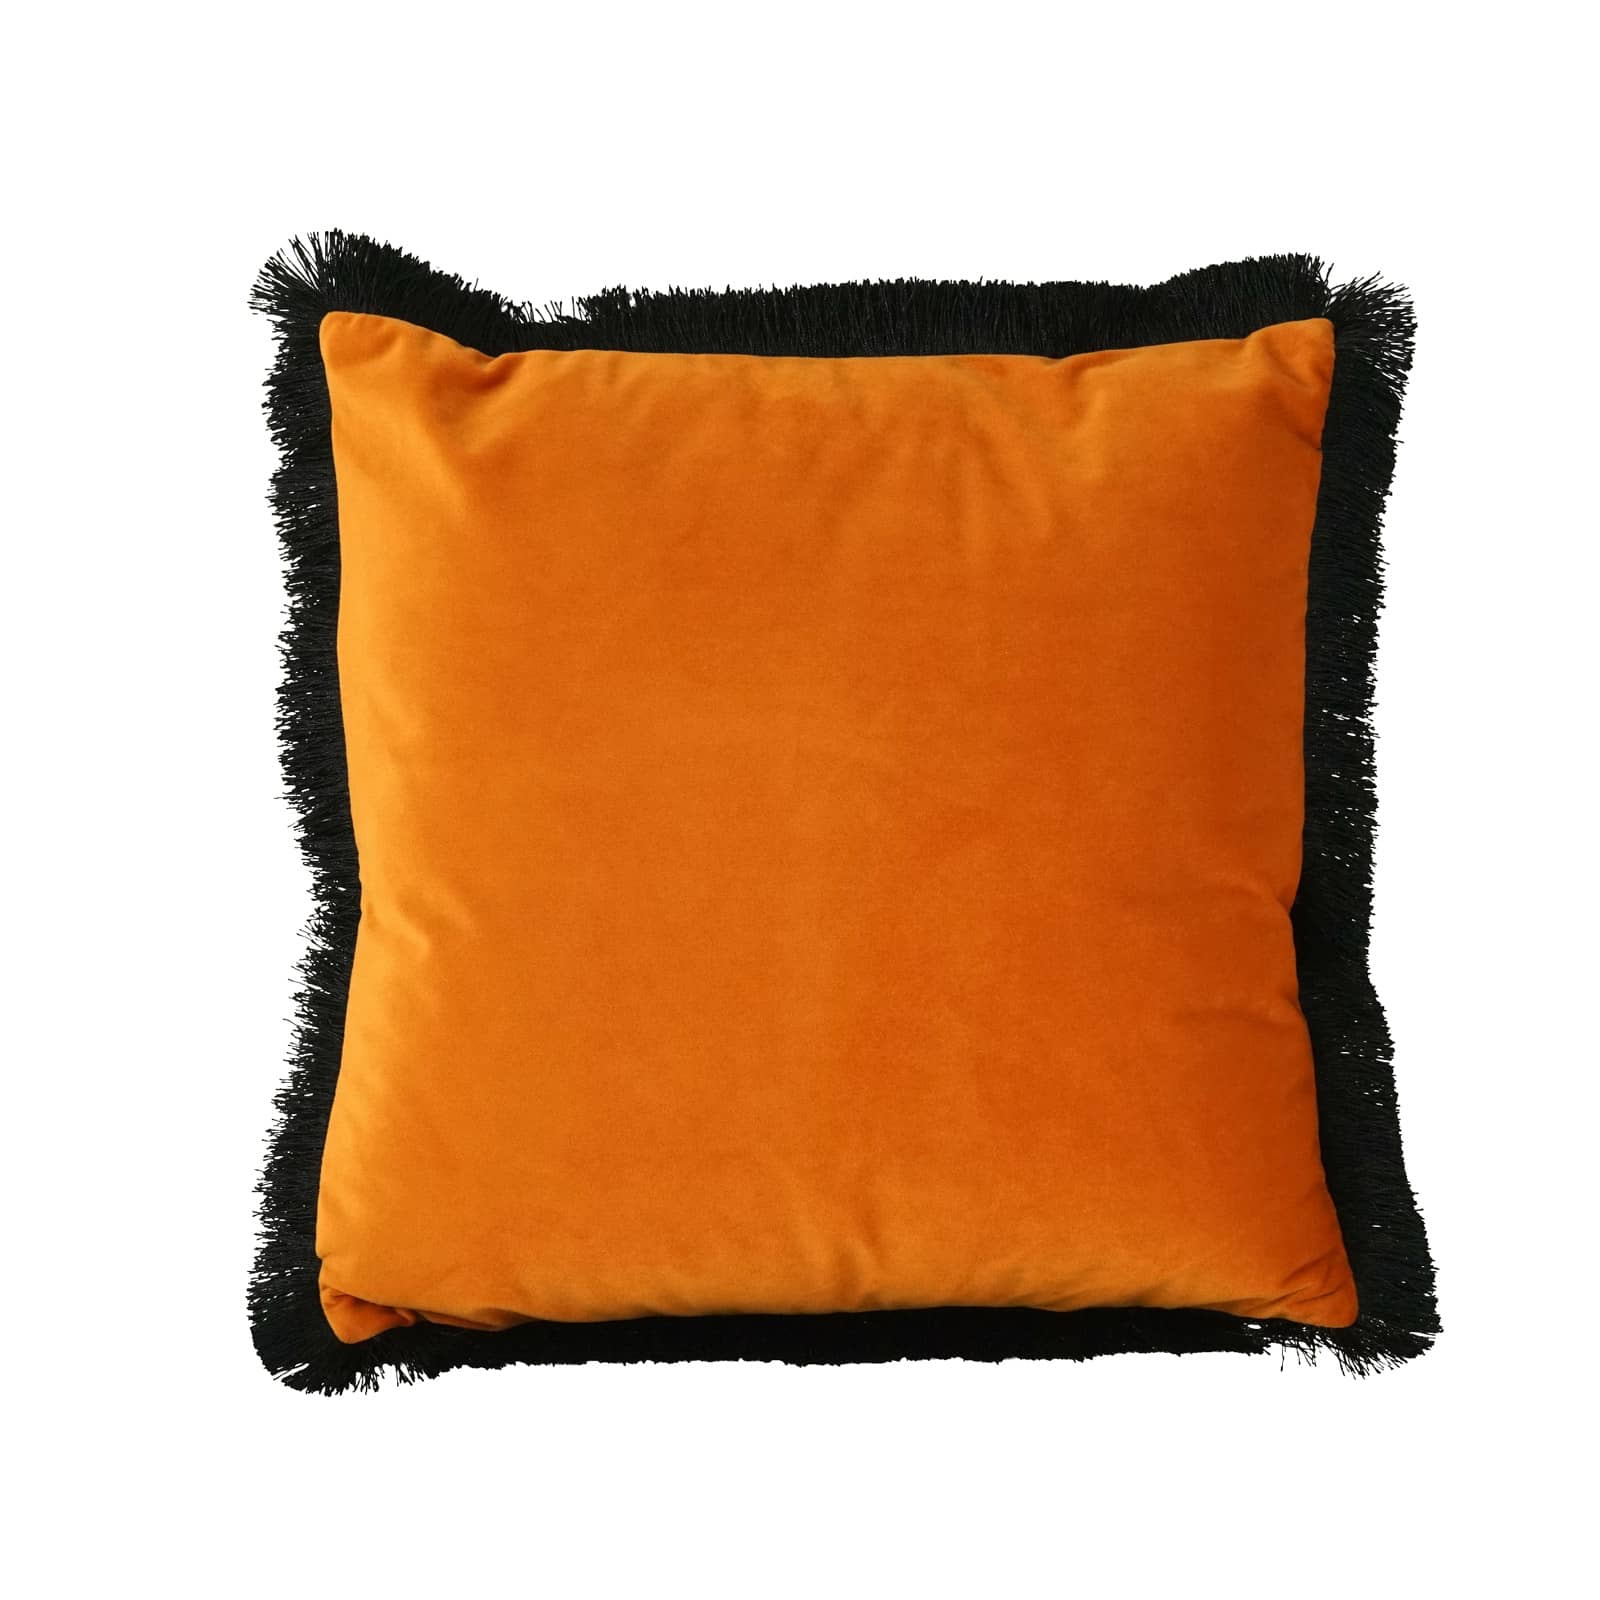 Samtkissen Velvet Cushion, orange-schwarz, Polyester, 45x45 cm, mit schwarzen Fransen, inklusive Füllung